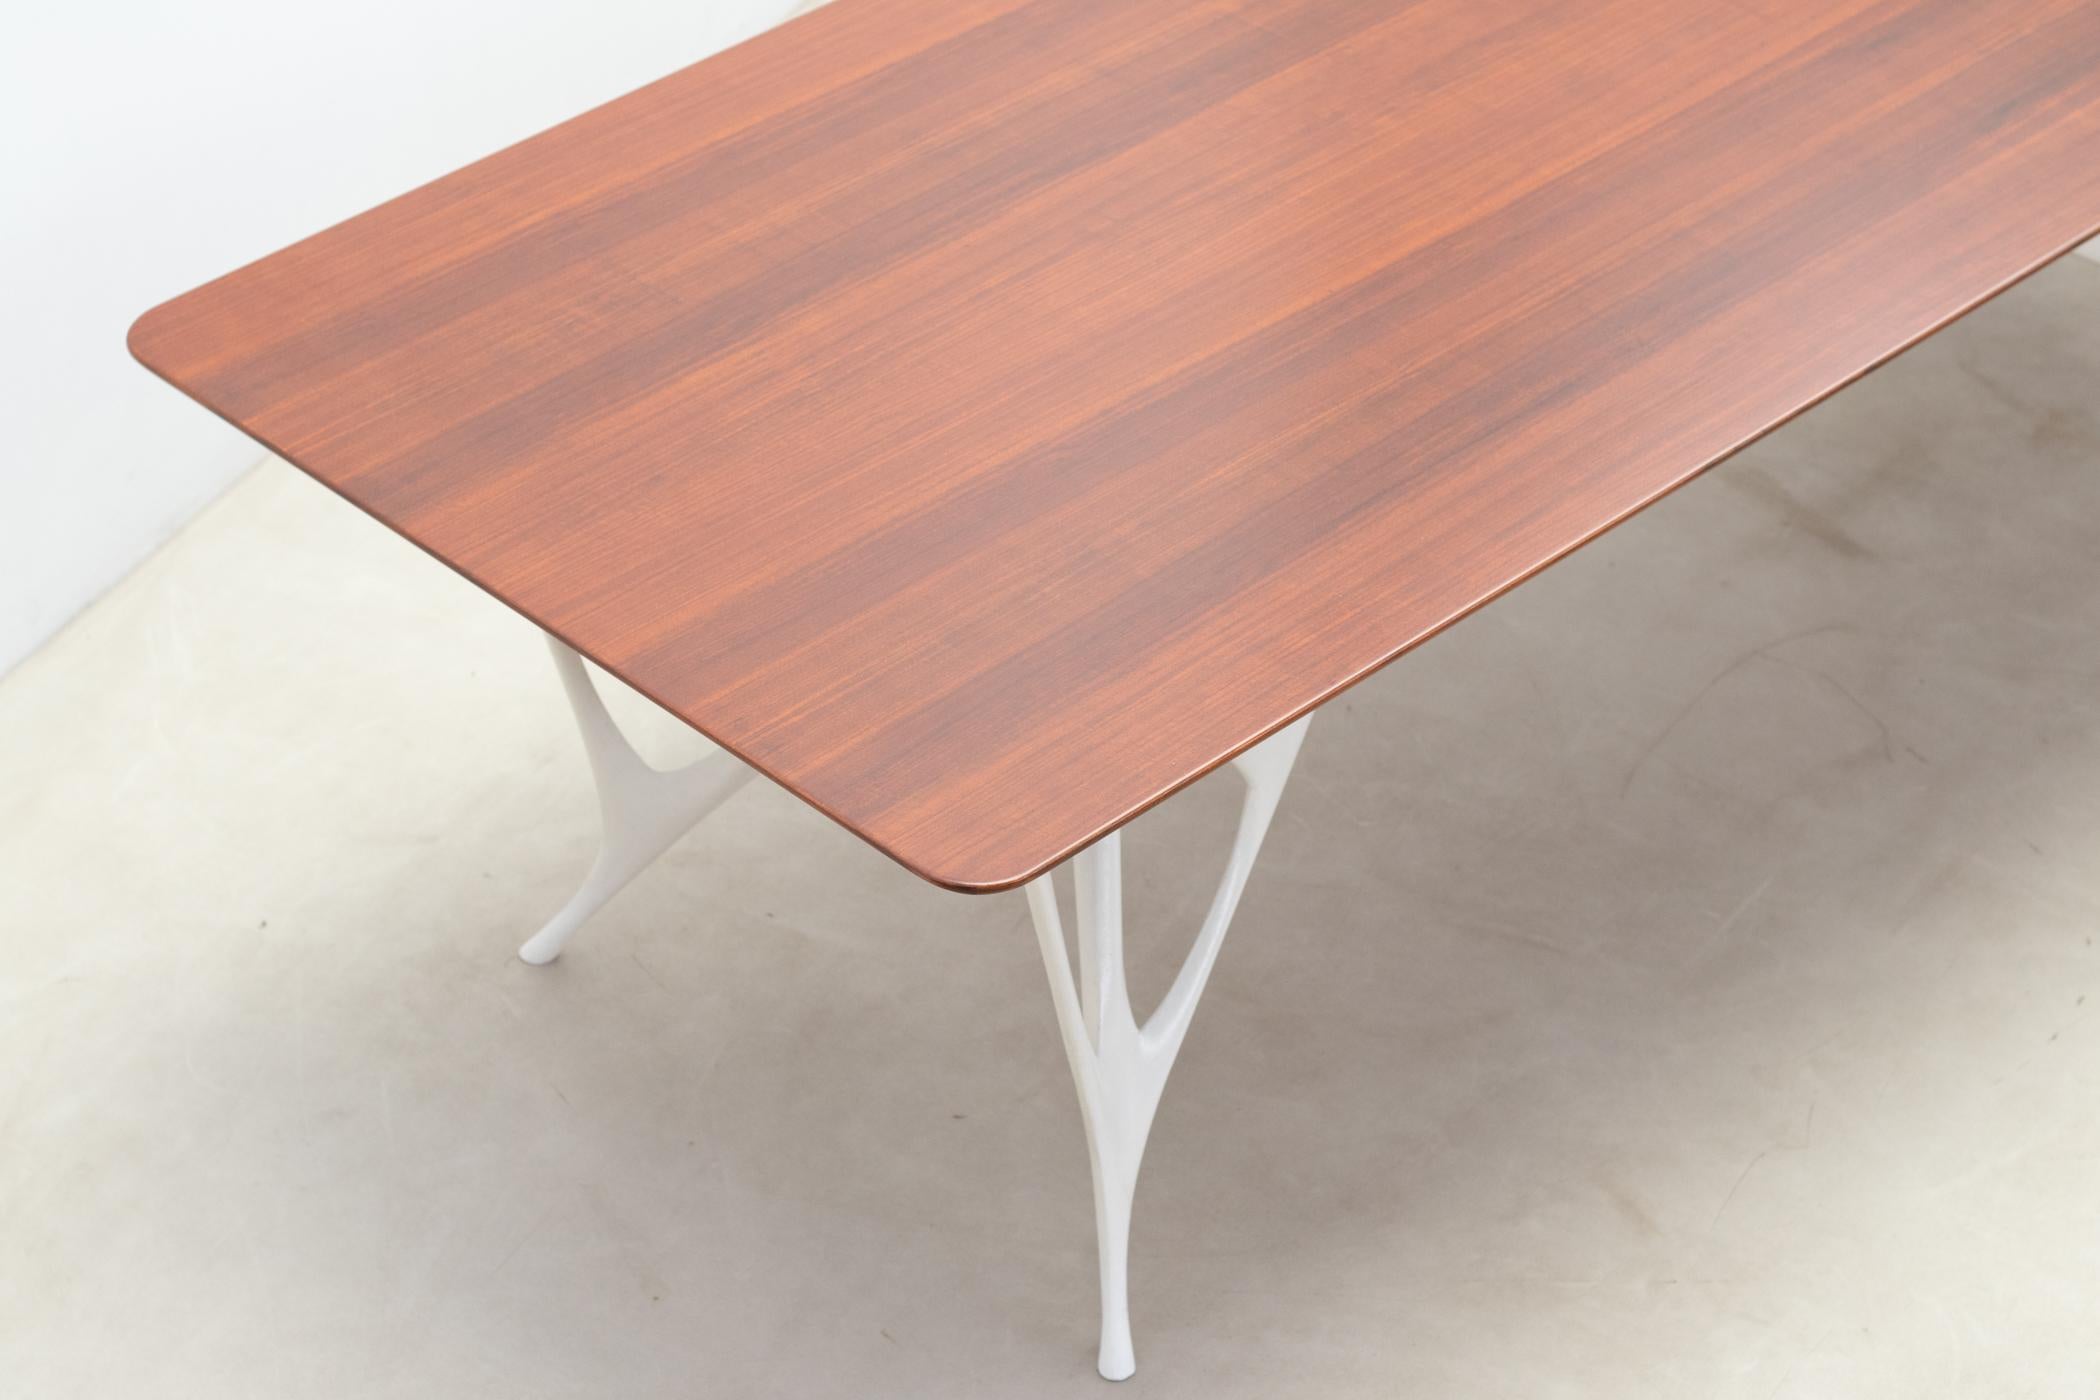 Architectural table by Le Opere e i Giorni studio For Sale 4